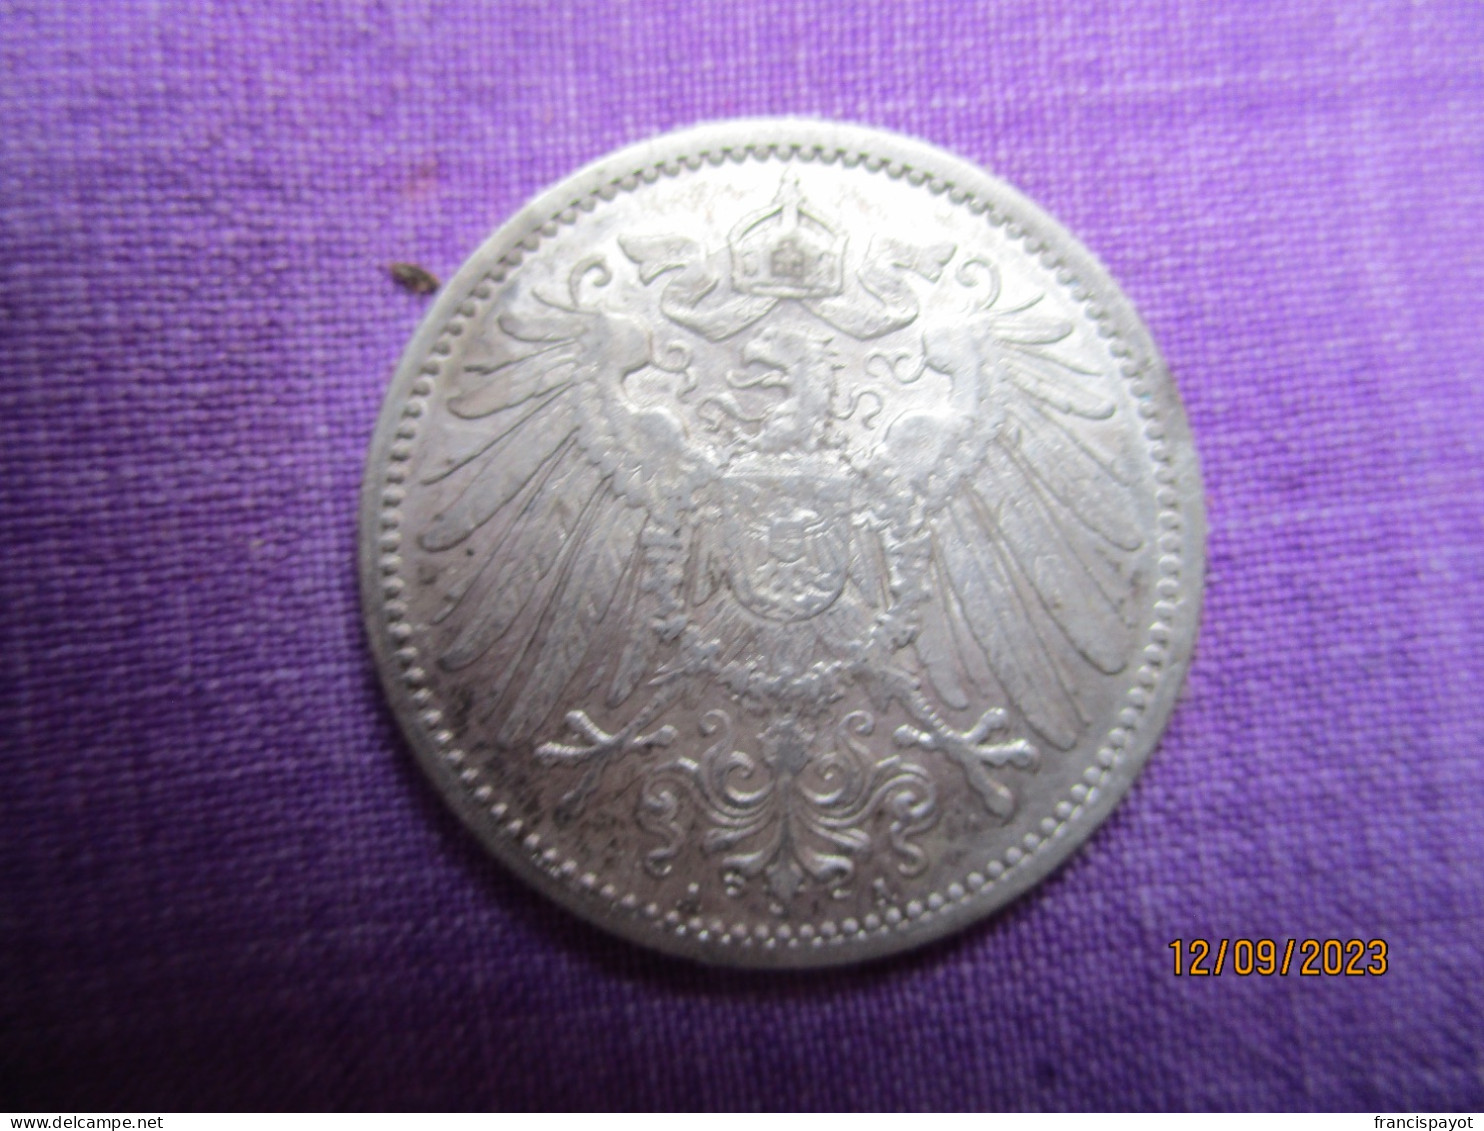 Germany 1 Reich Mark 1906 A - 50 Pfennig